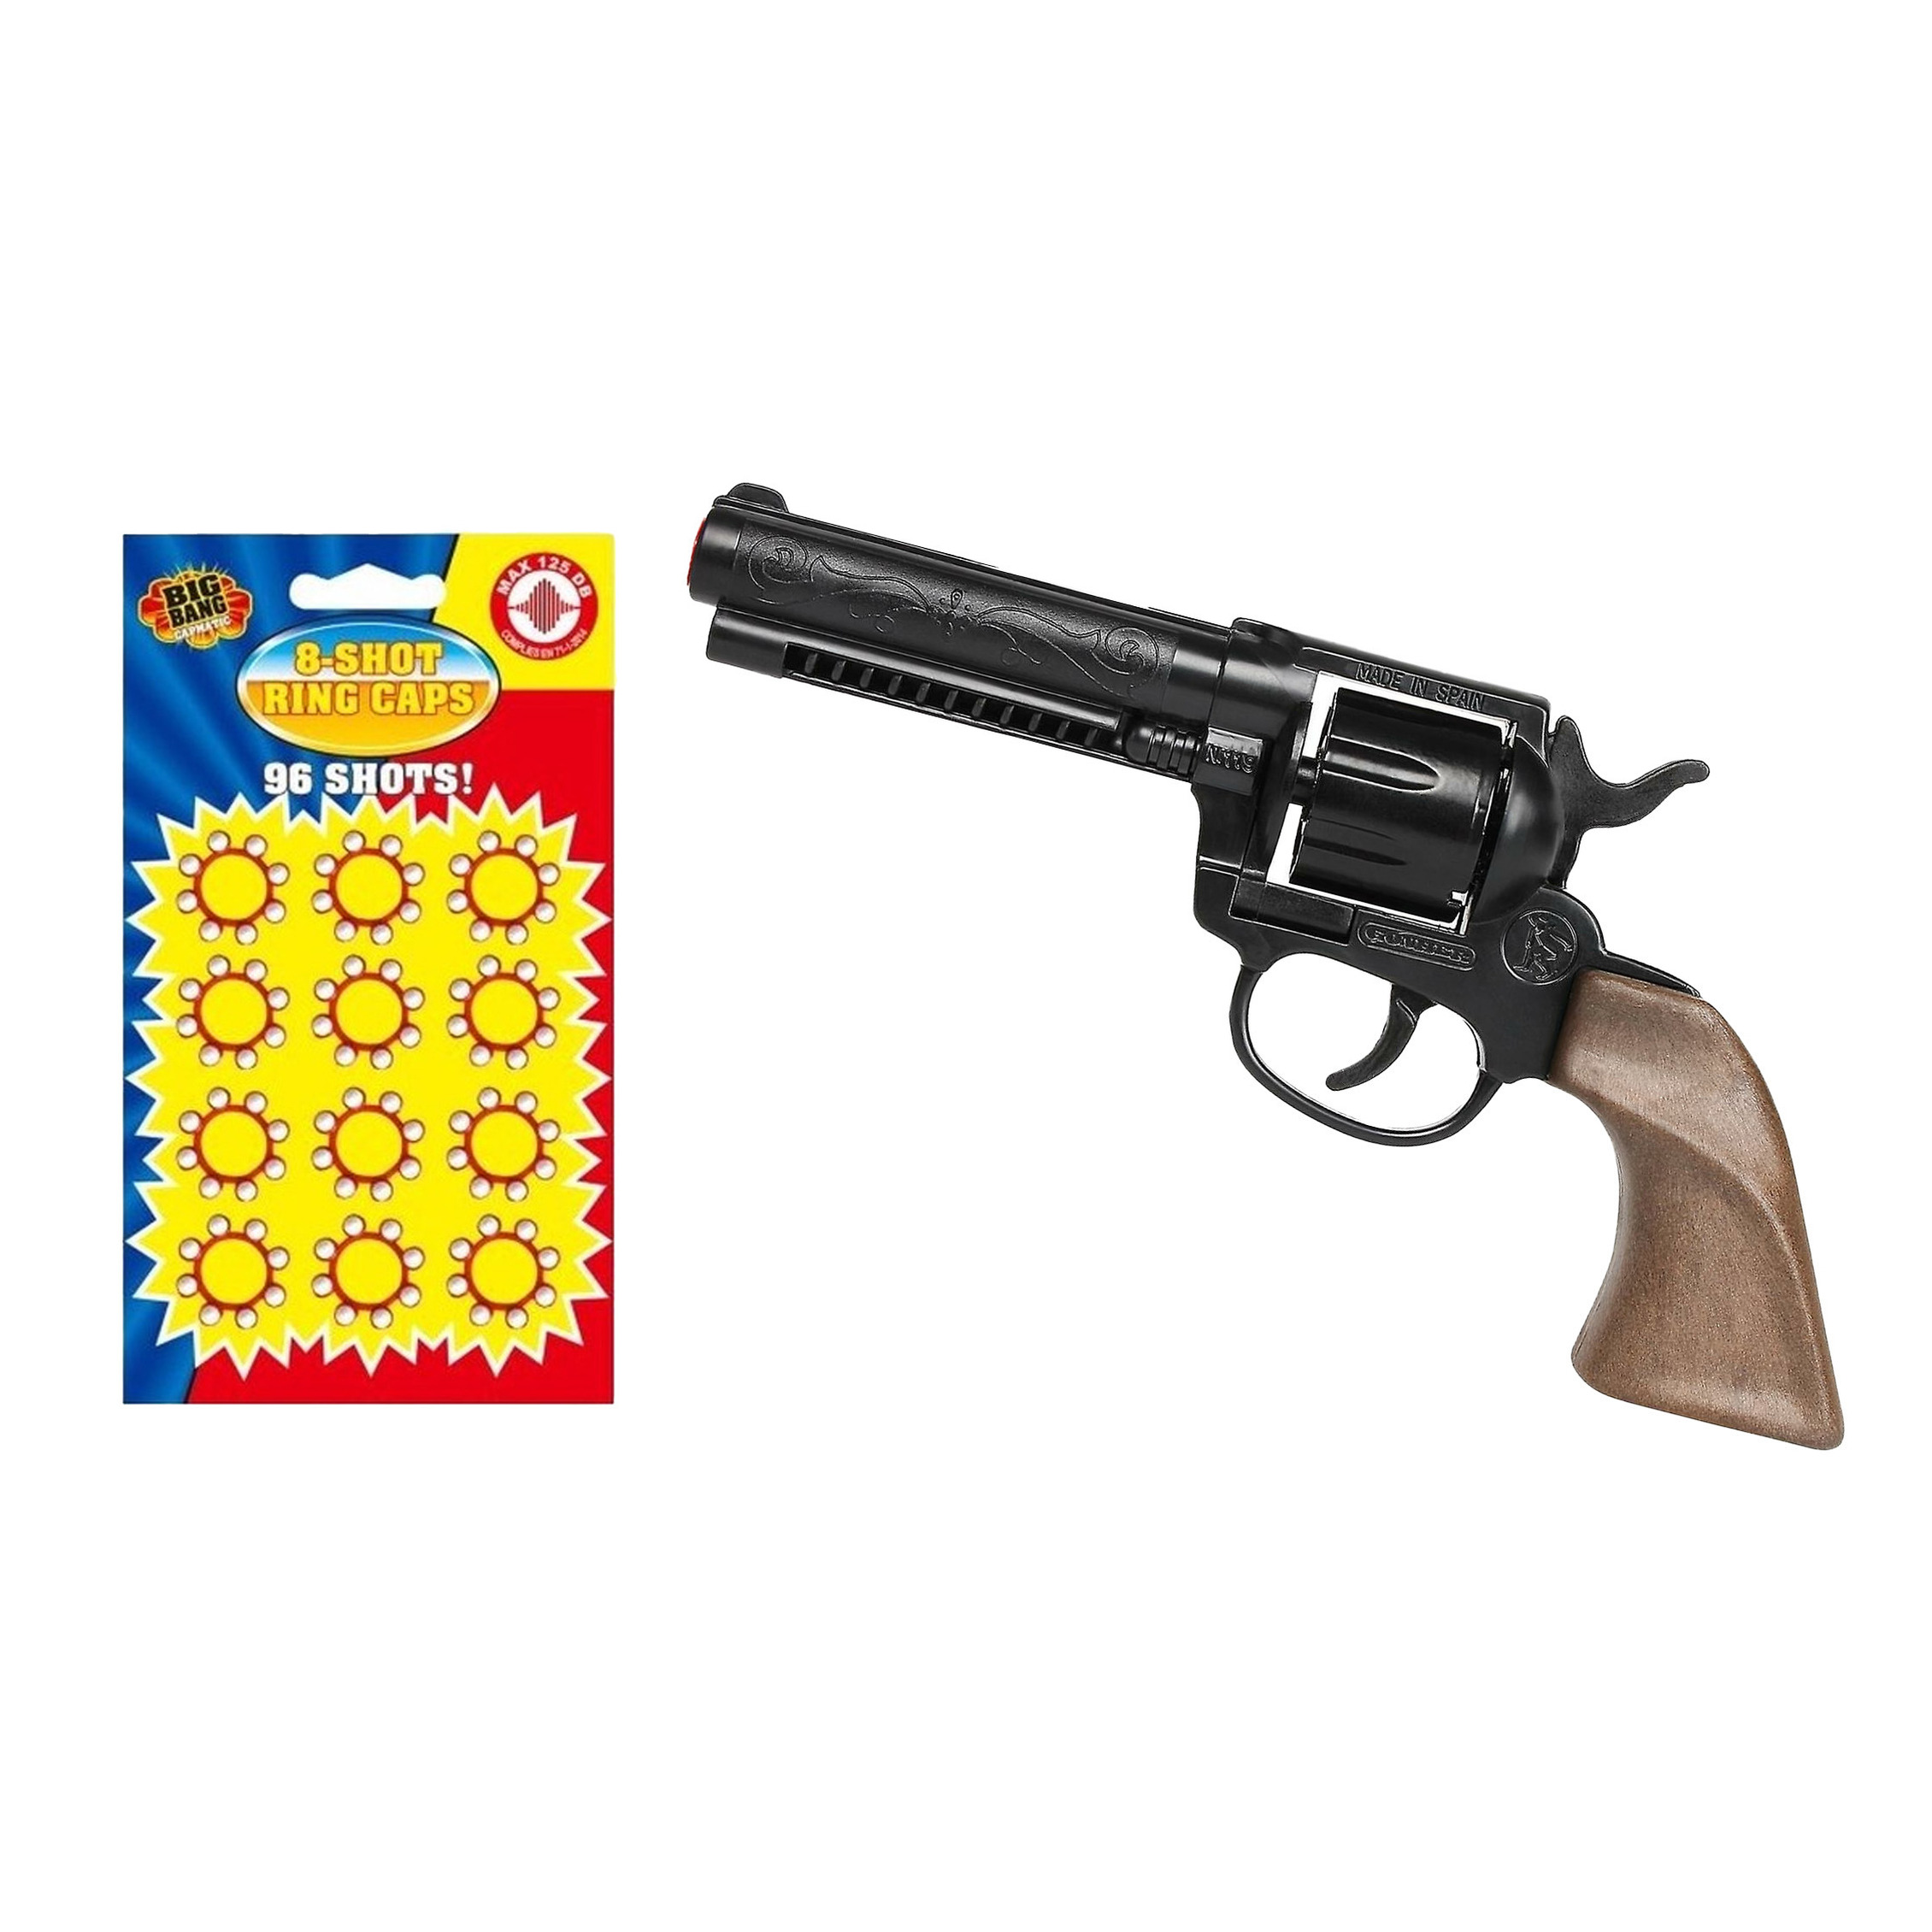 Gohner cowboy verkleed speelgoed revolver-pistool metaal met 24x ringen 8 schots plaffertjes